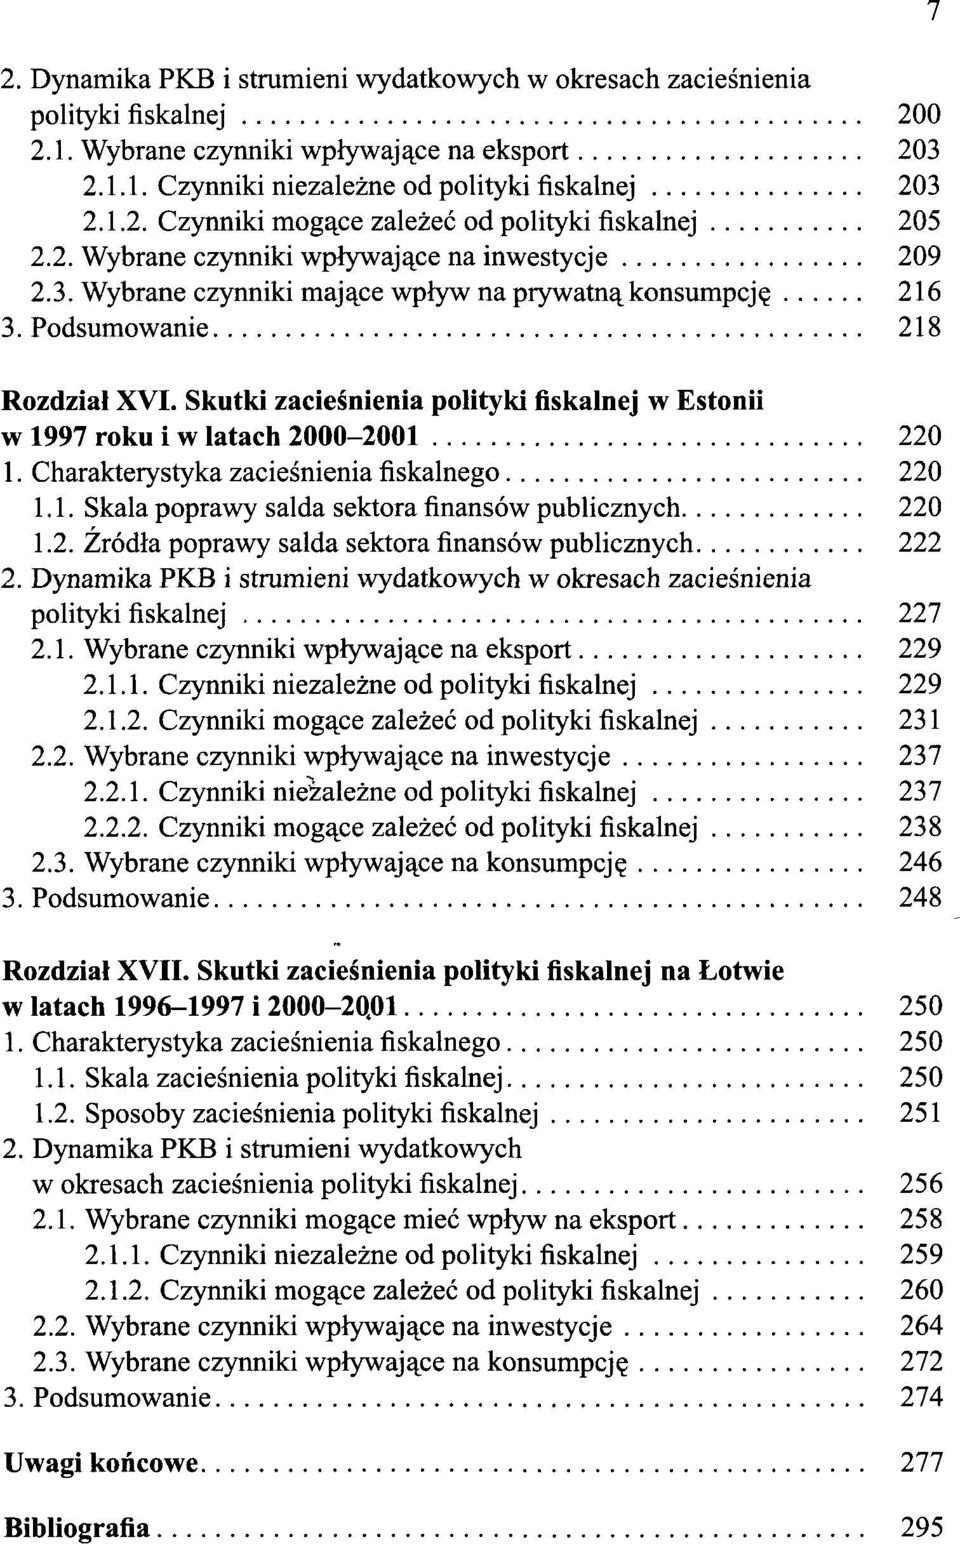 Skutki zacieśnienia polityki fiskalnej w Estonii w 1997 roku i w latach 2000-2001 220 1. Charakterystyka zacieśnienia fiskalnego 220 1.1. Skala poprawy salda sektora finansów publicznych 220 1.2. Źródła poprawy salda sektora finansów publicznych 222 2.